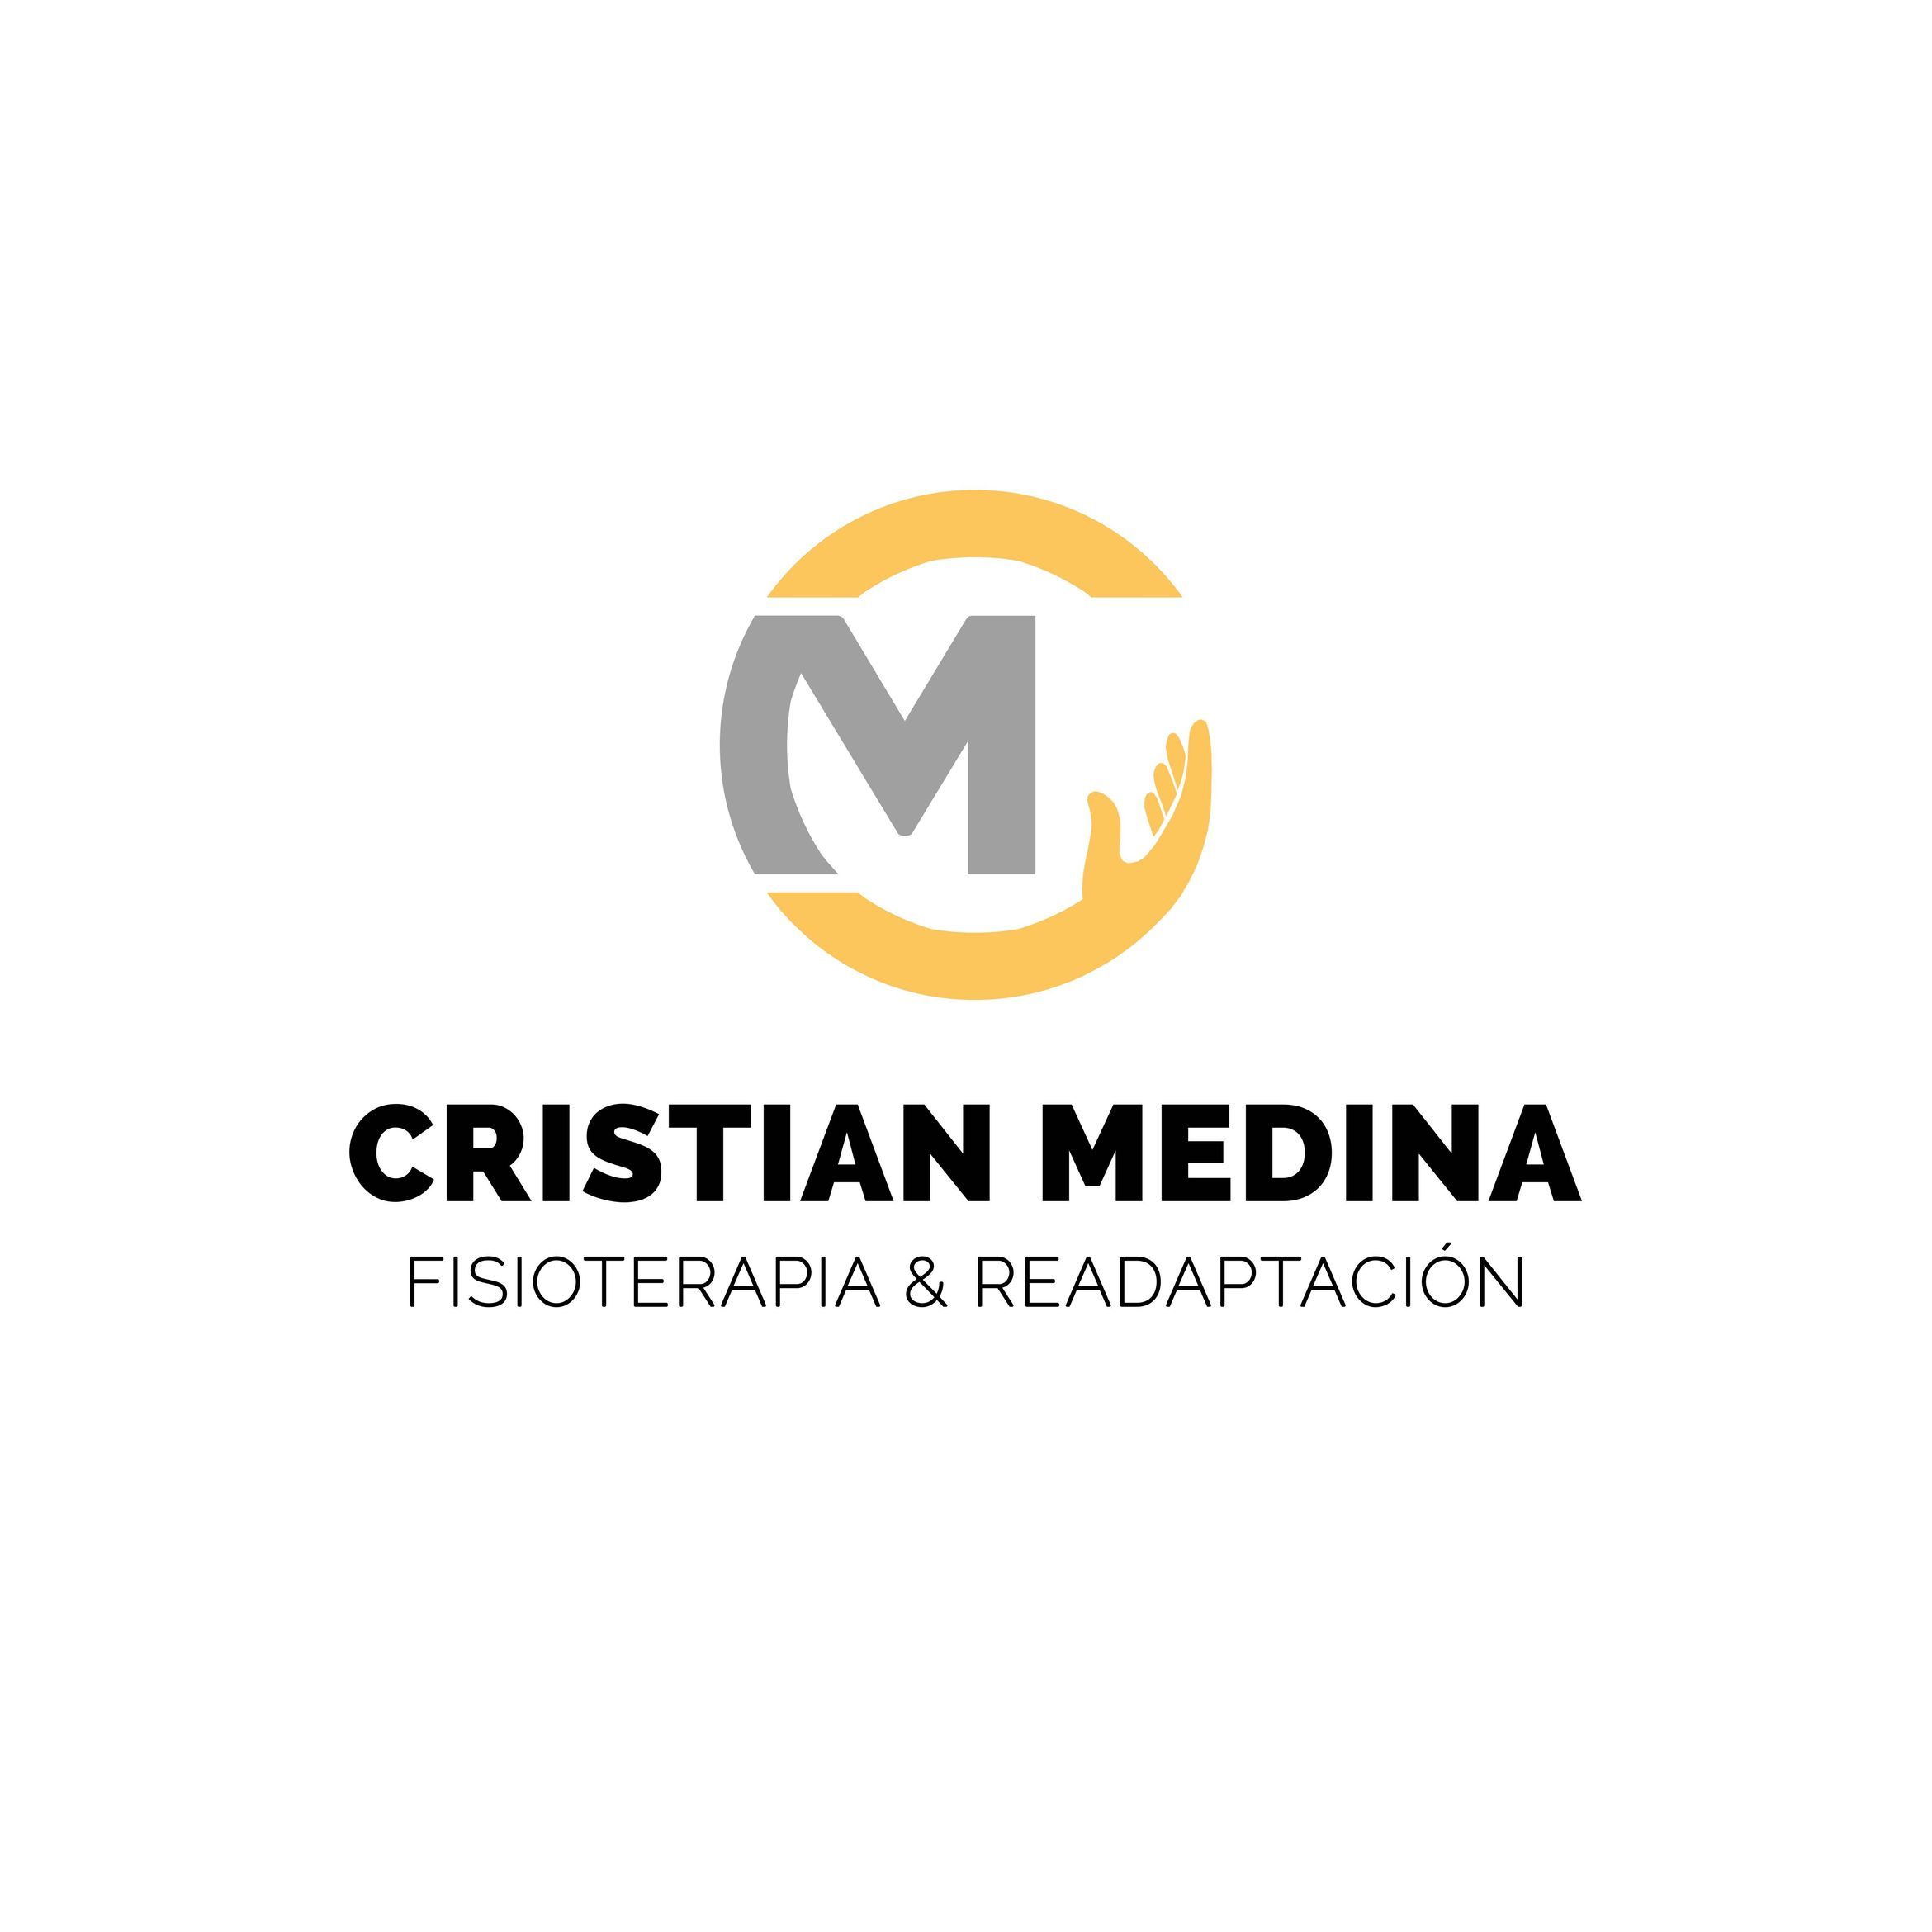 Fisioterapia & Readaptación Cristian Medina, Calle Arguineguín, 25, 35010, Las Palmas de Gran Canaria